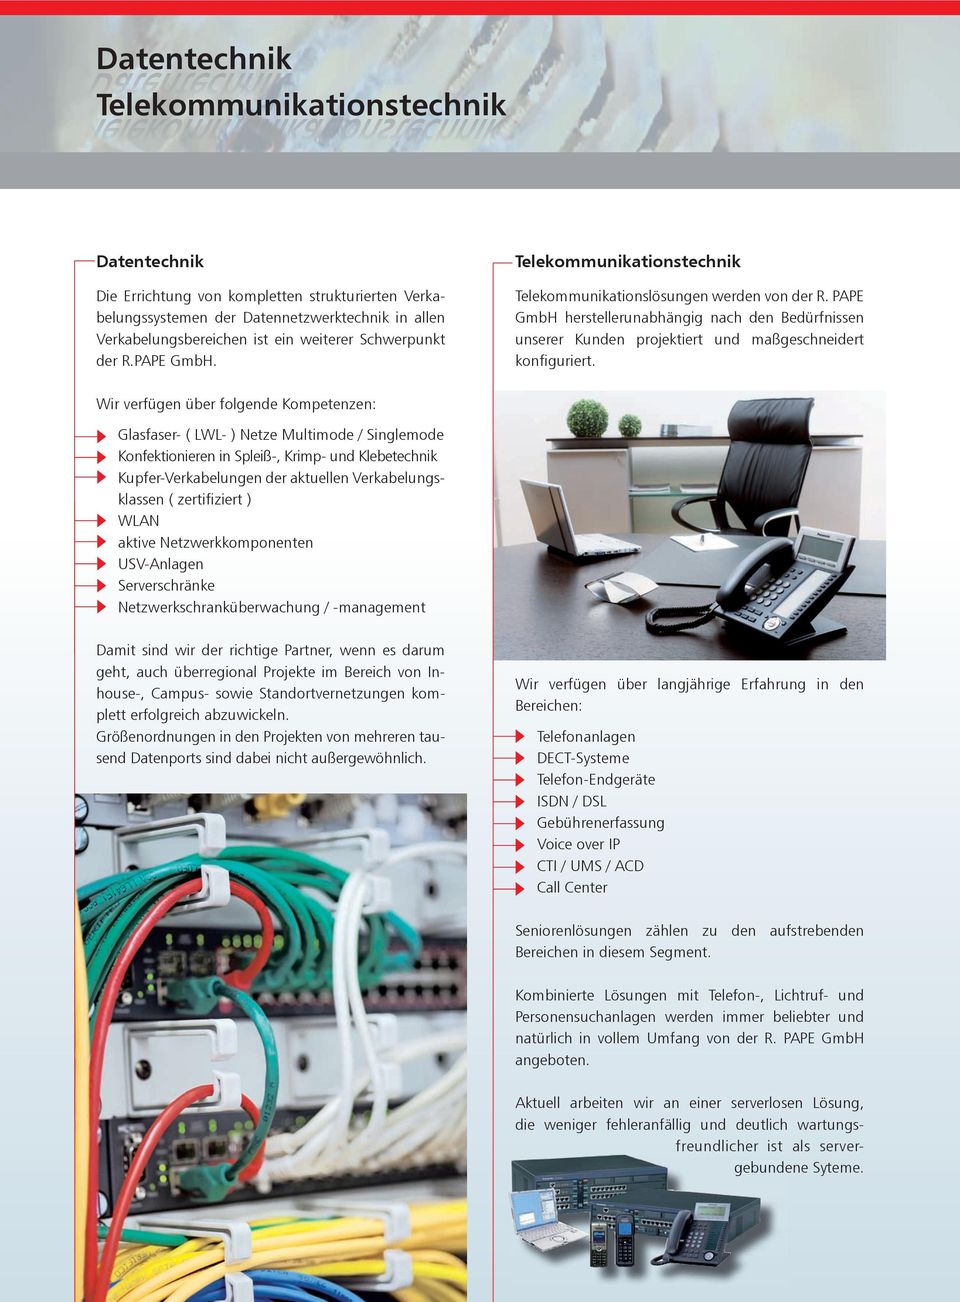 PAPE GmbH herstellerunabhängig nach den Bedürfnissen unserer Kunden projektiert und maßgeschneidert konfiguriert.